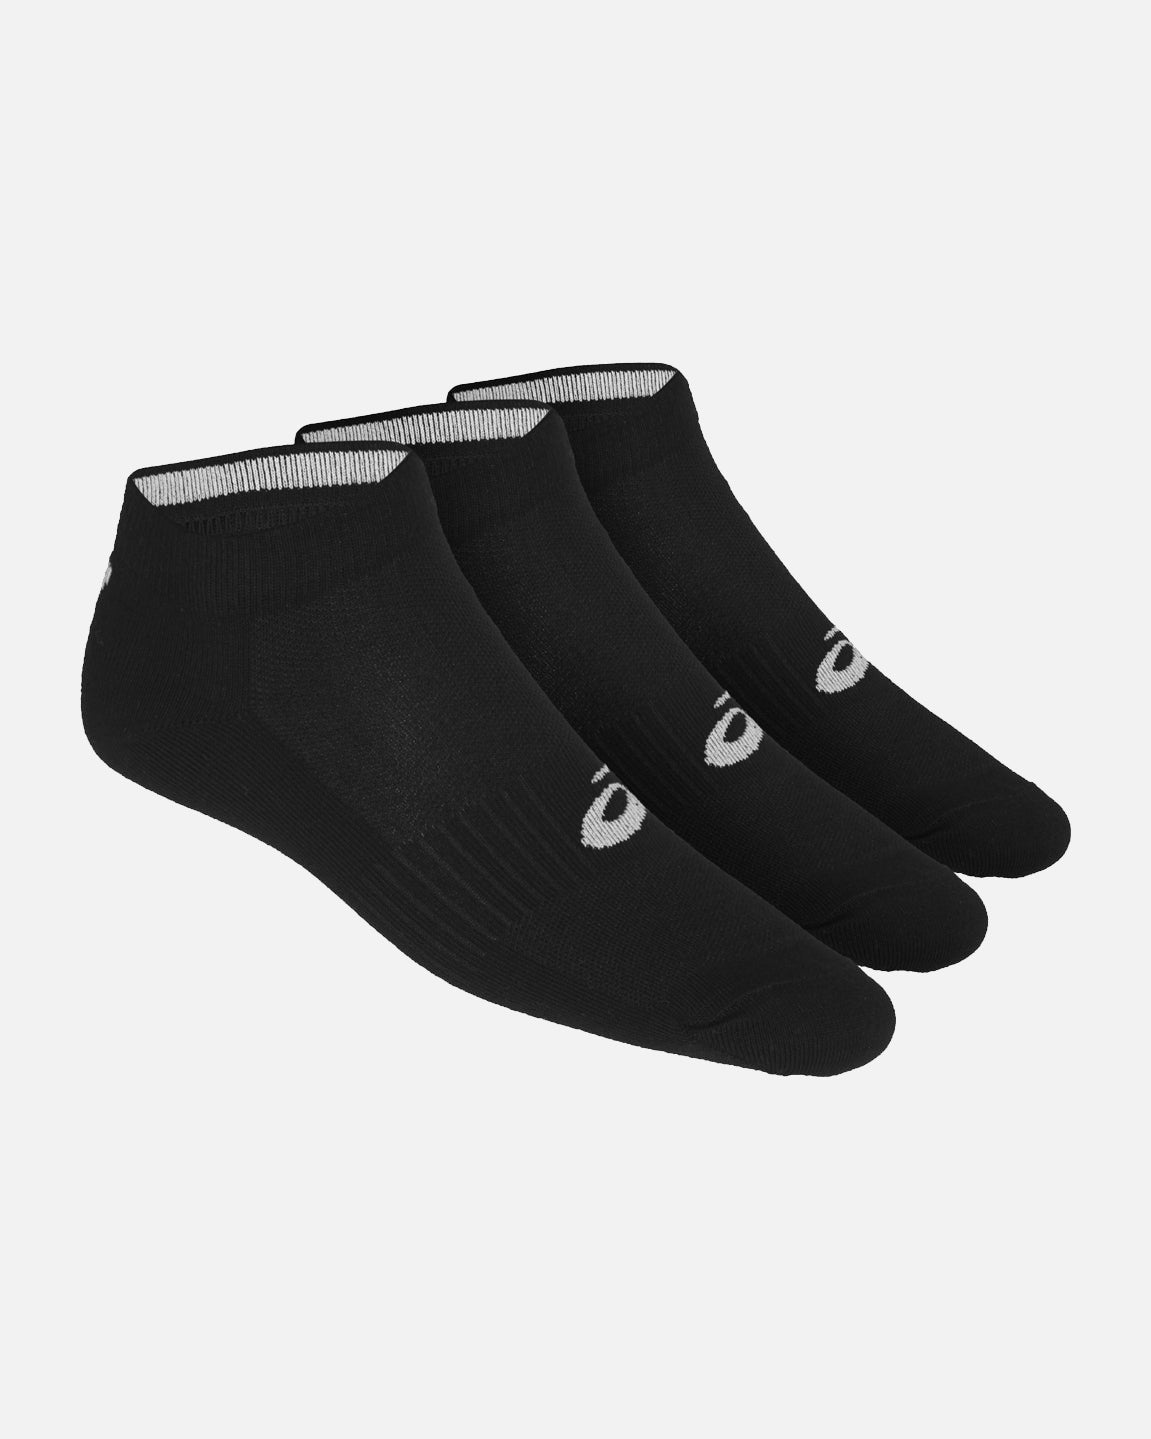 Pack of 3 pairs of Asics short socks - Black